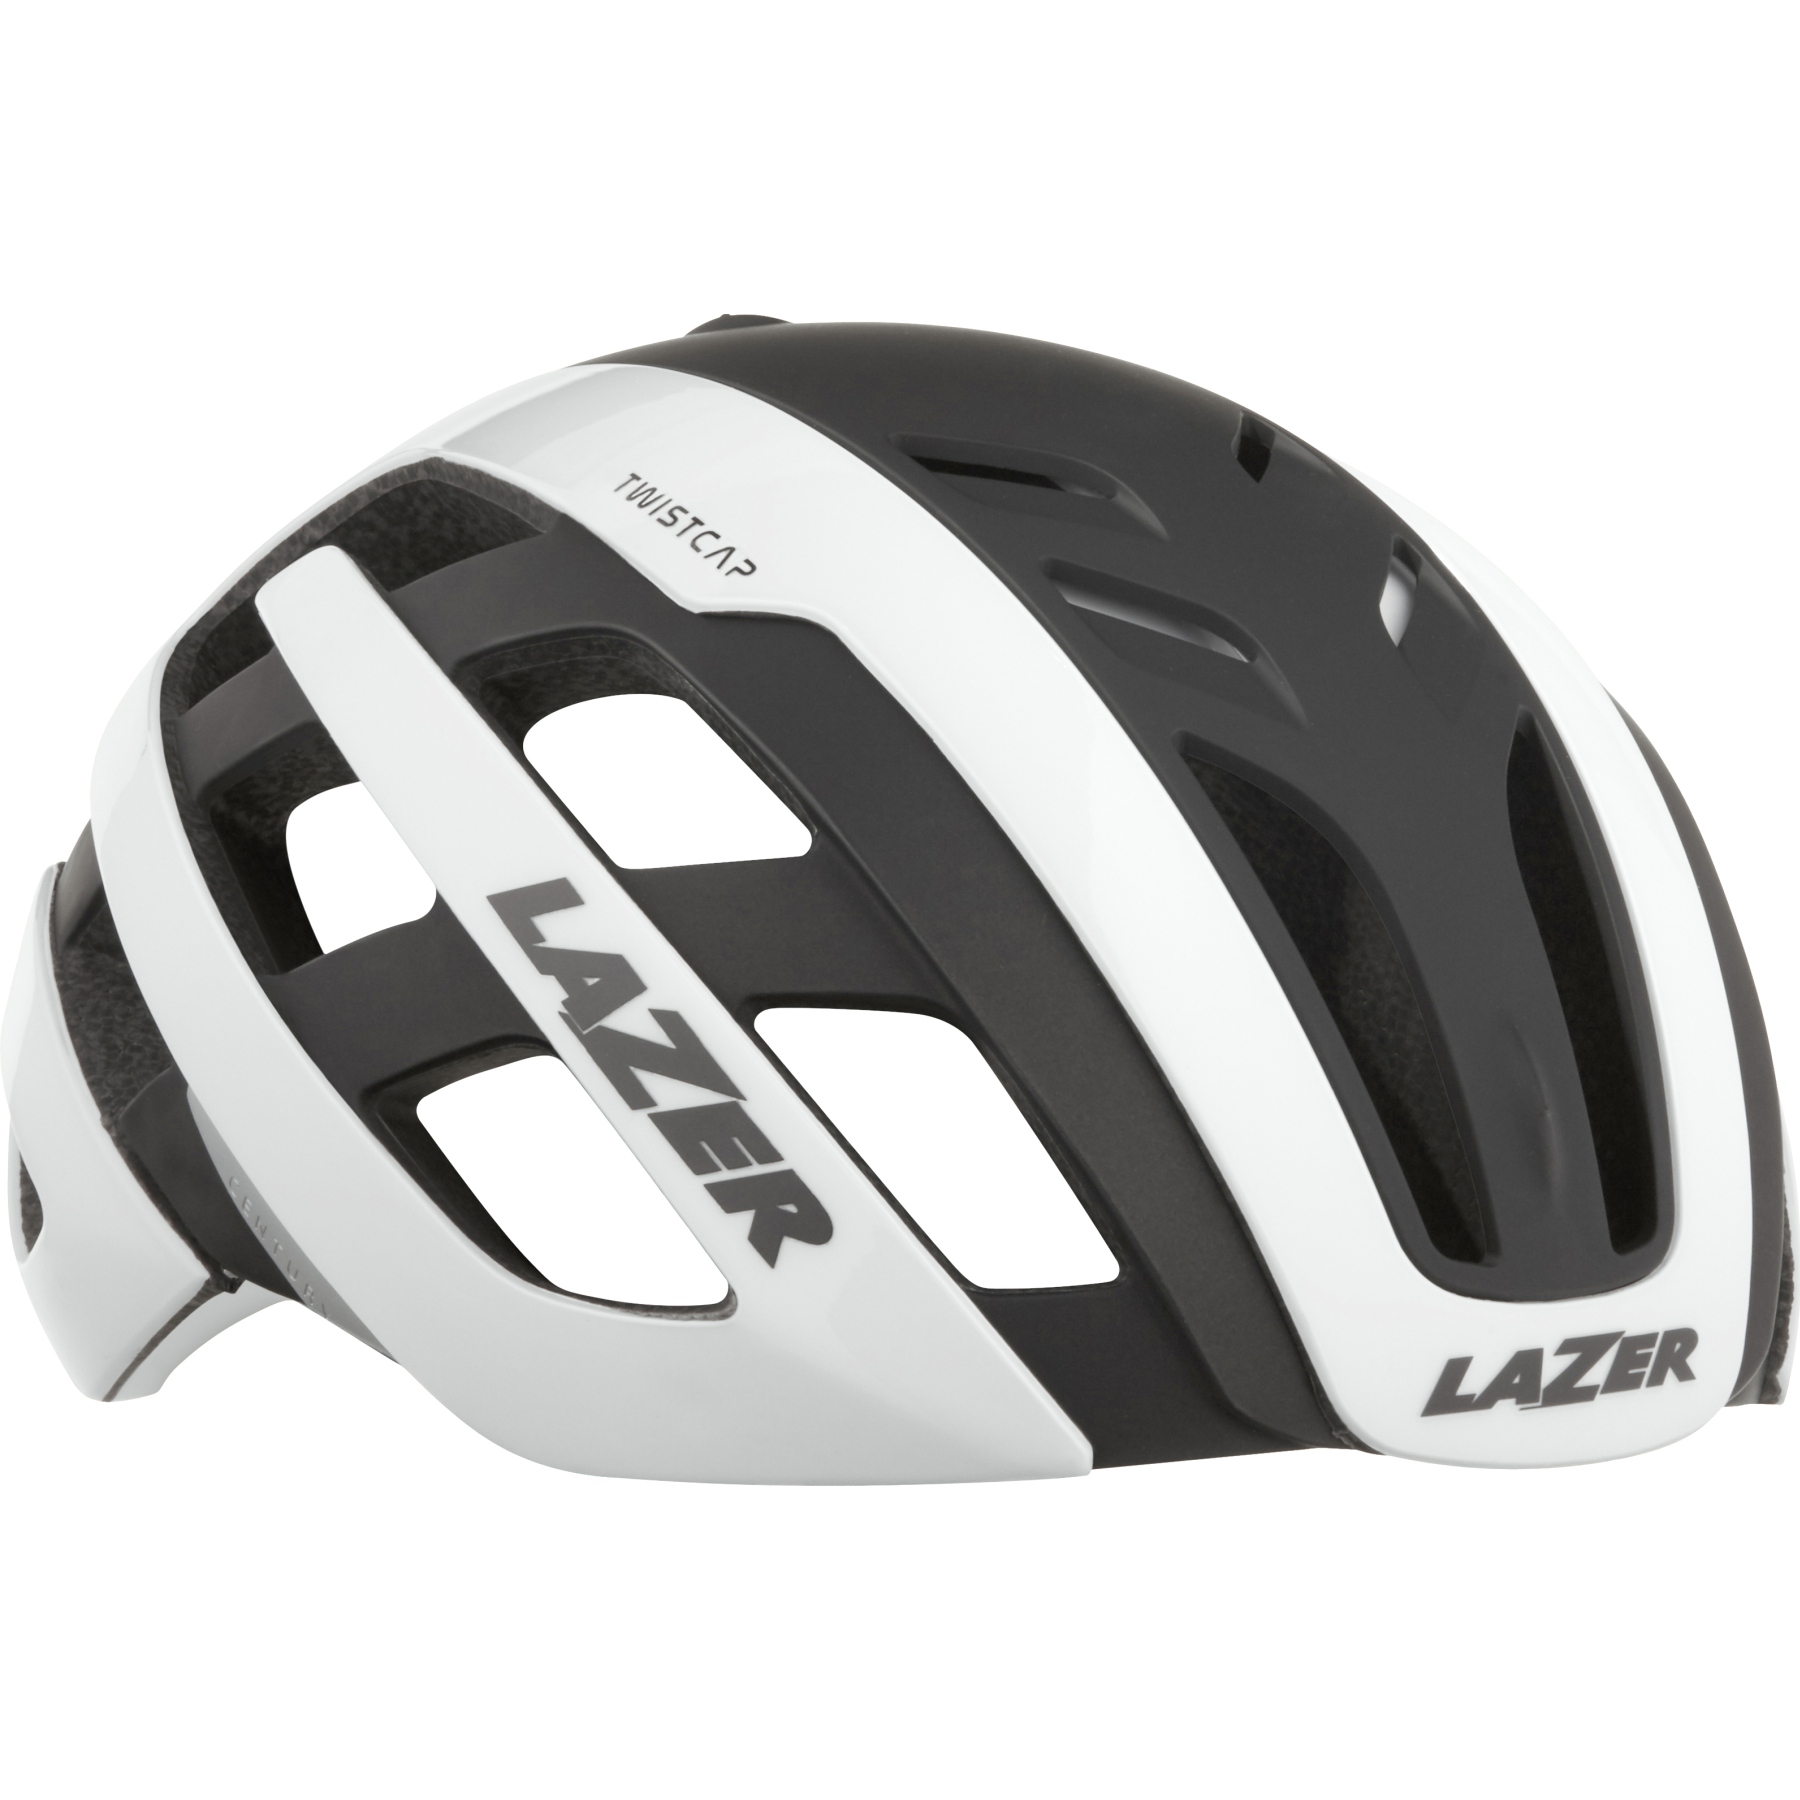 Produktbild von Lazer Century Fahrradhelm - white black